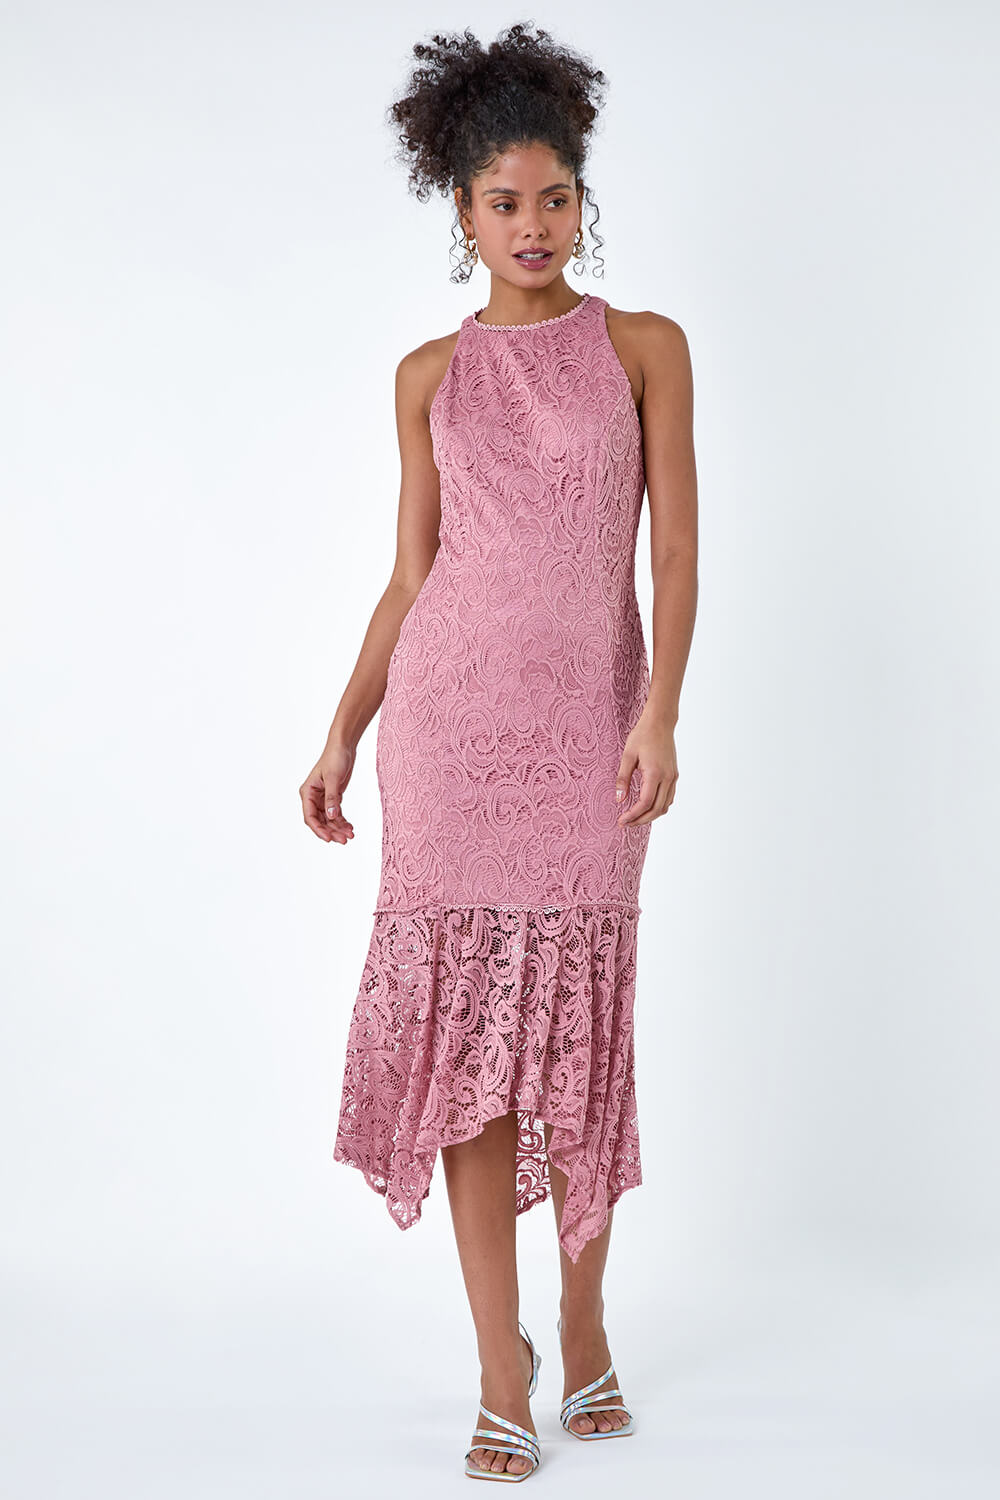 PINK Sleeveless Stretch Lace Midi Dress, Image 2 of 6